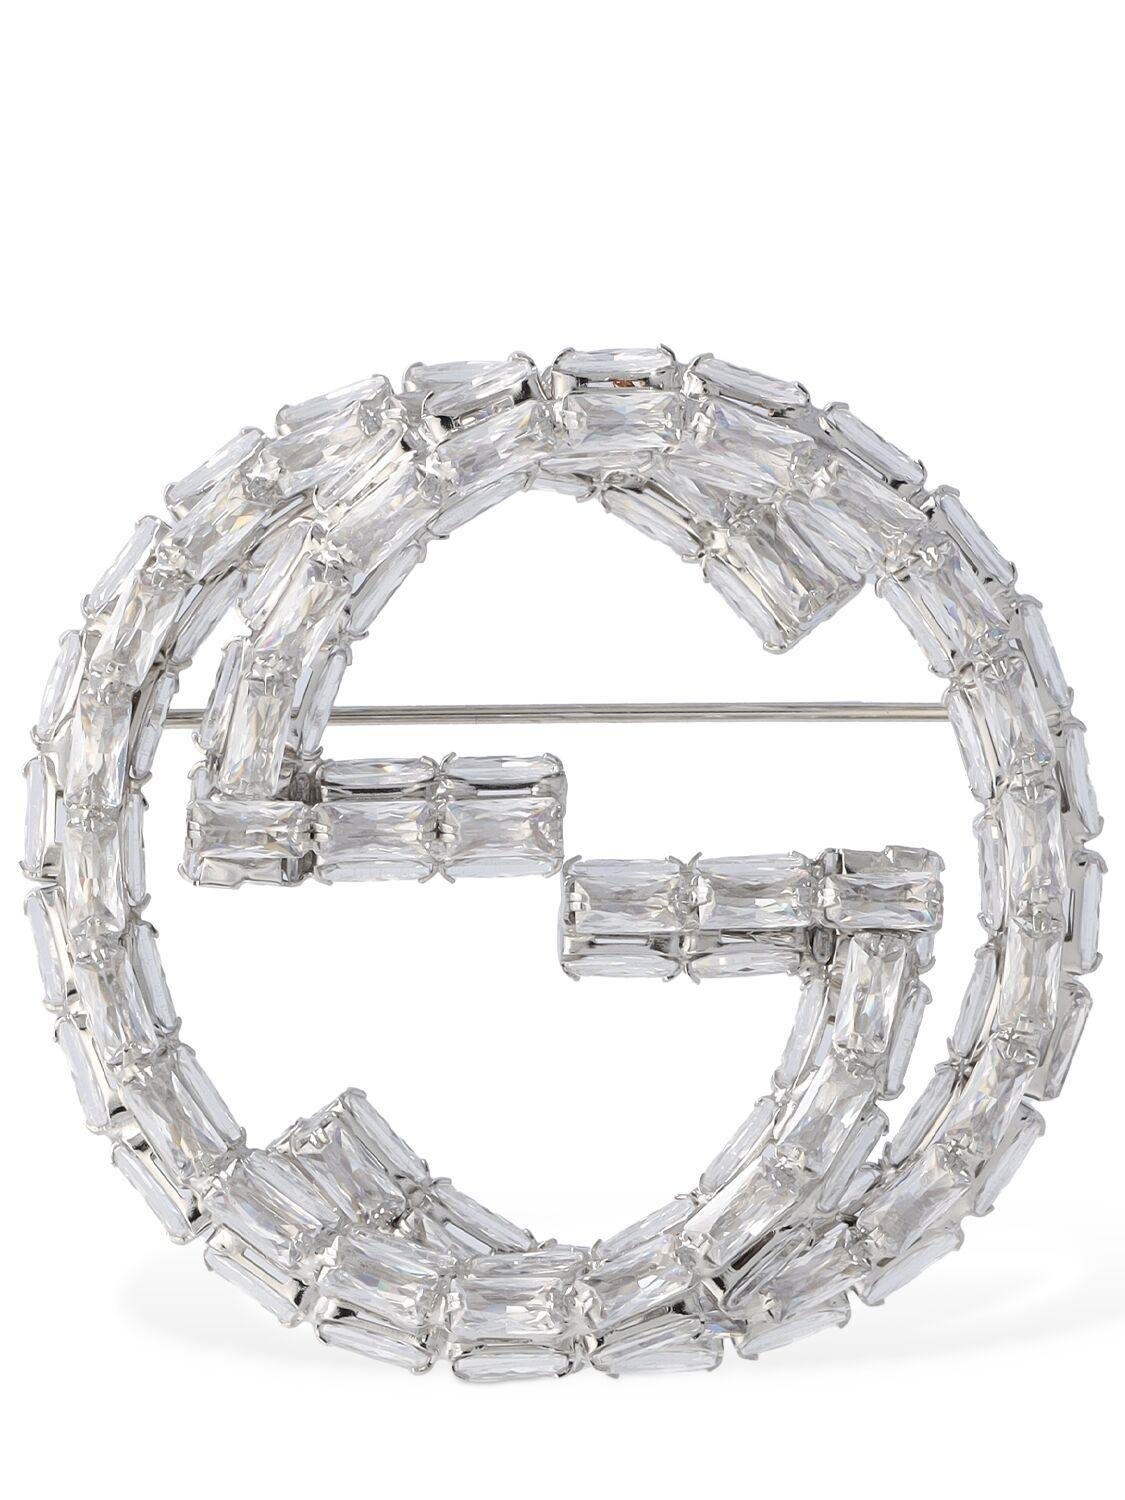 Crystal Interlockingg Embellished Brooch by GUCCI